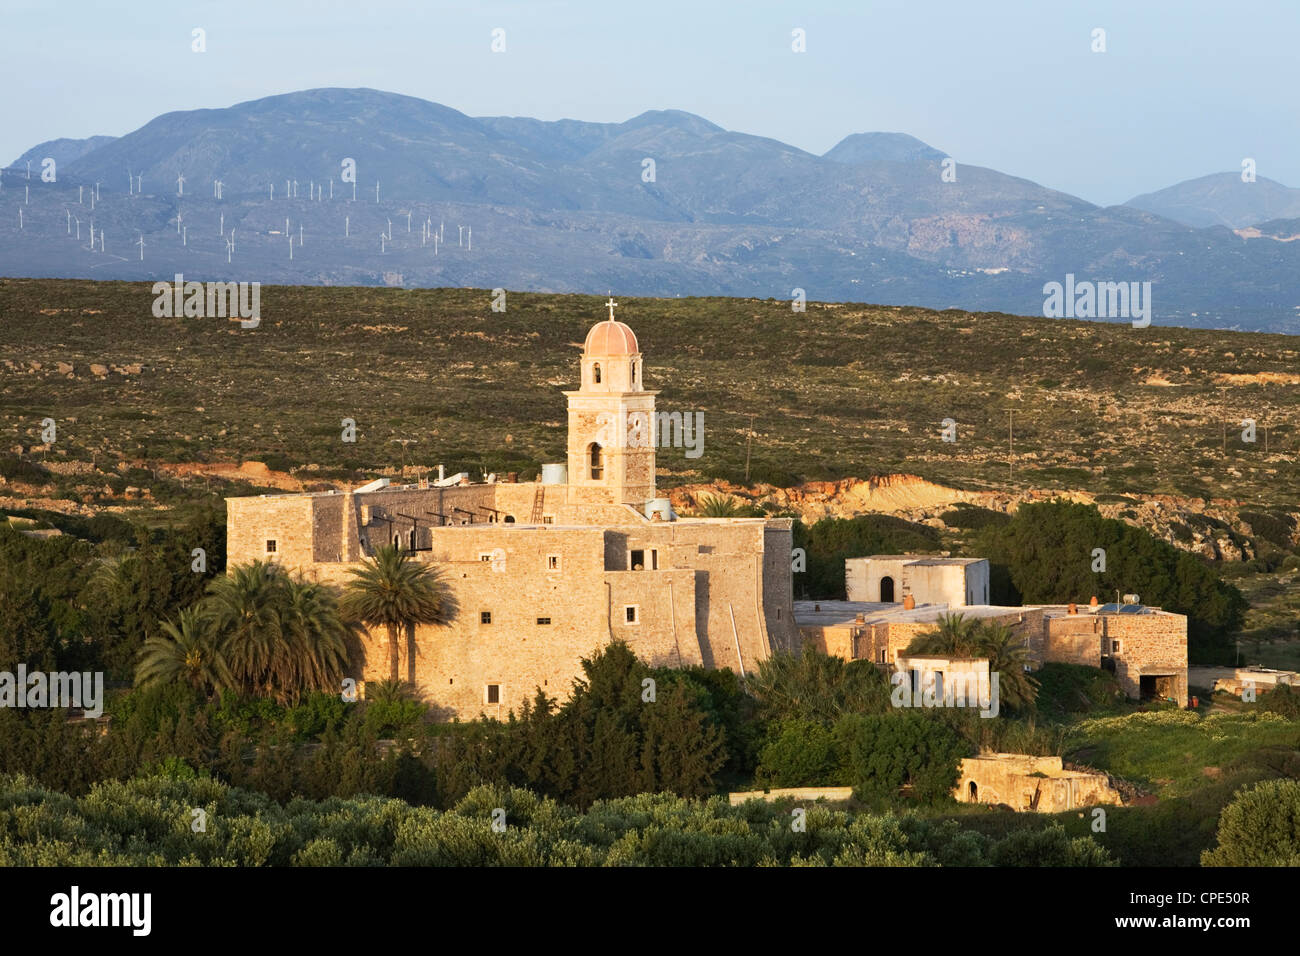 Monastère de Toplou, Moni Toplou, près de Sitia, λασίθι, Crète, îles grecques, Grèce, Europe Banque D'Images